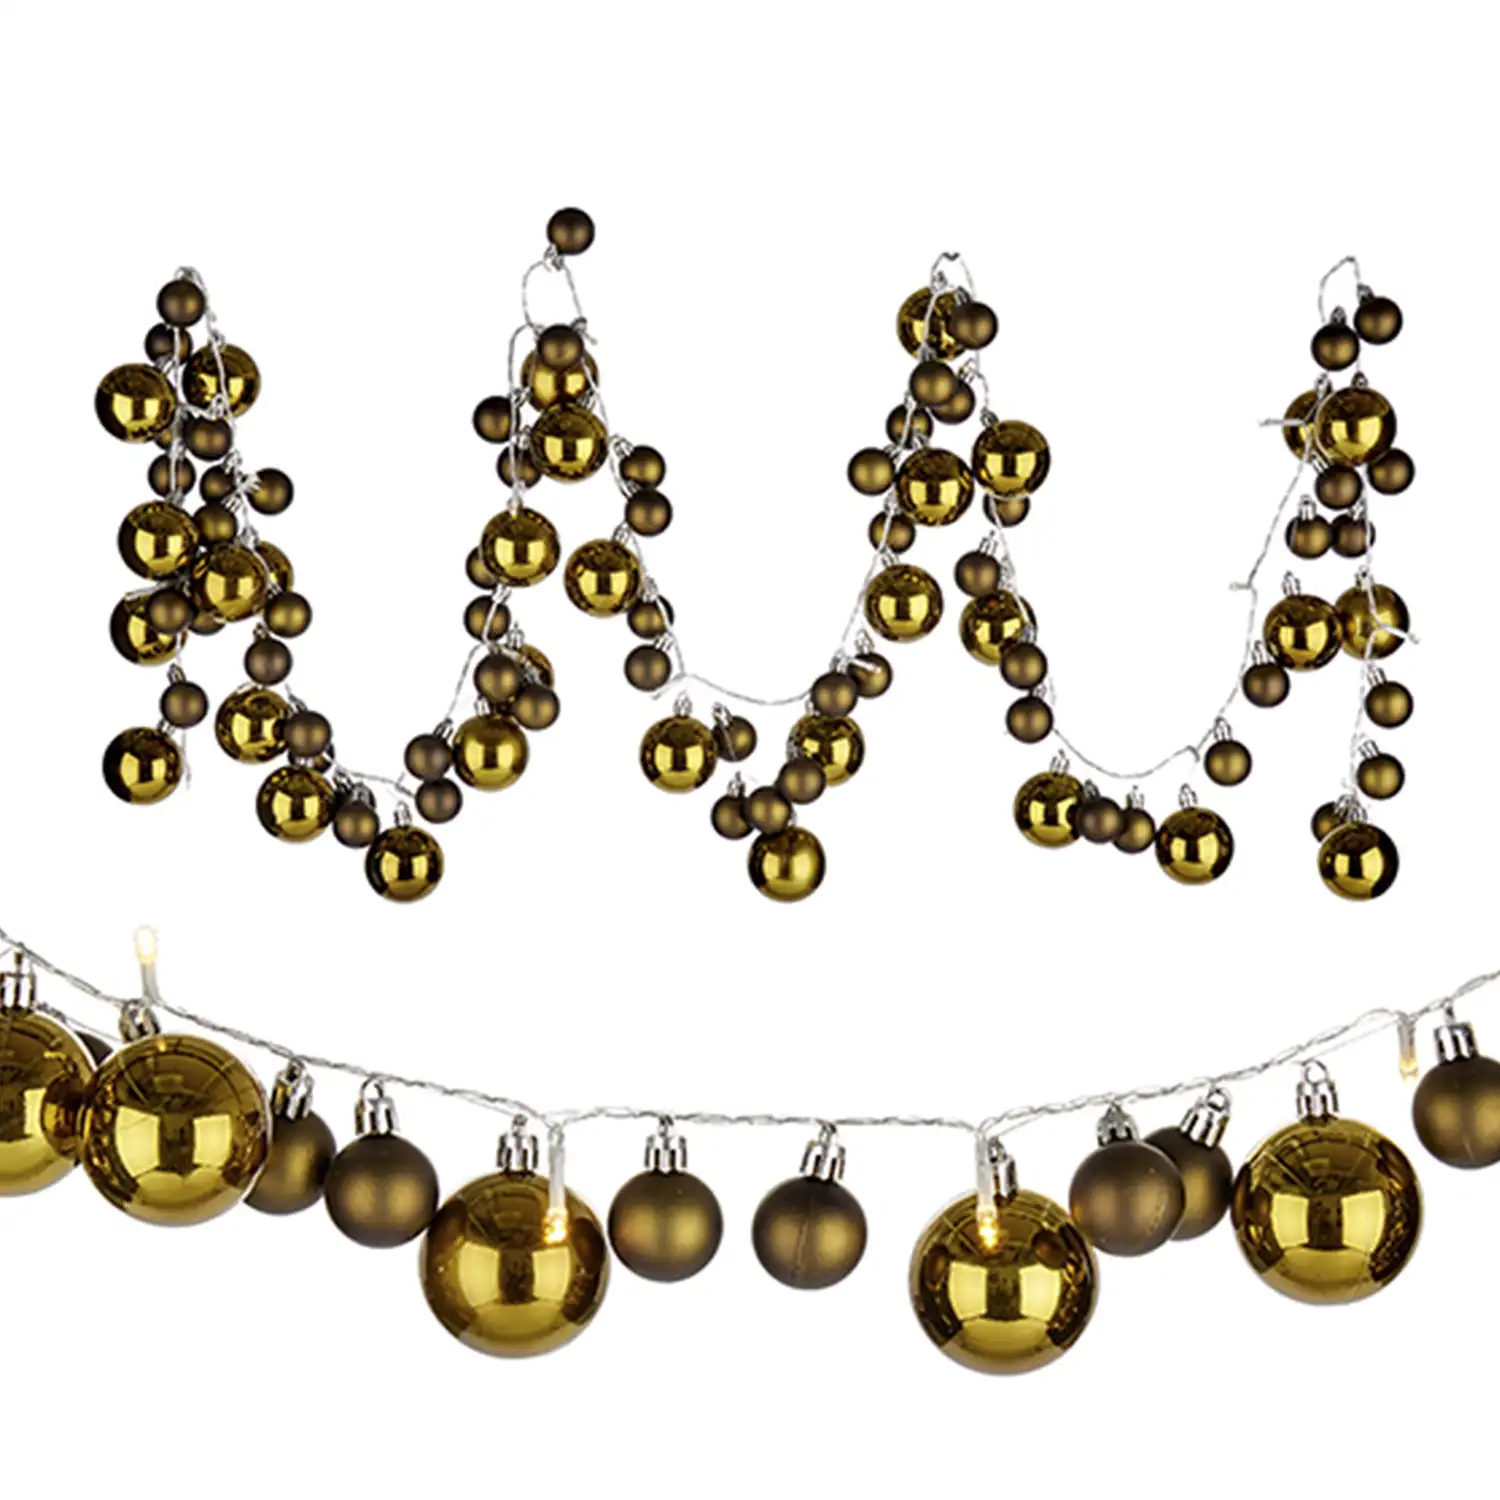 Guirnalda navideña de 93 bolas y luces LED.